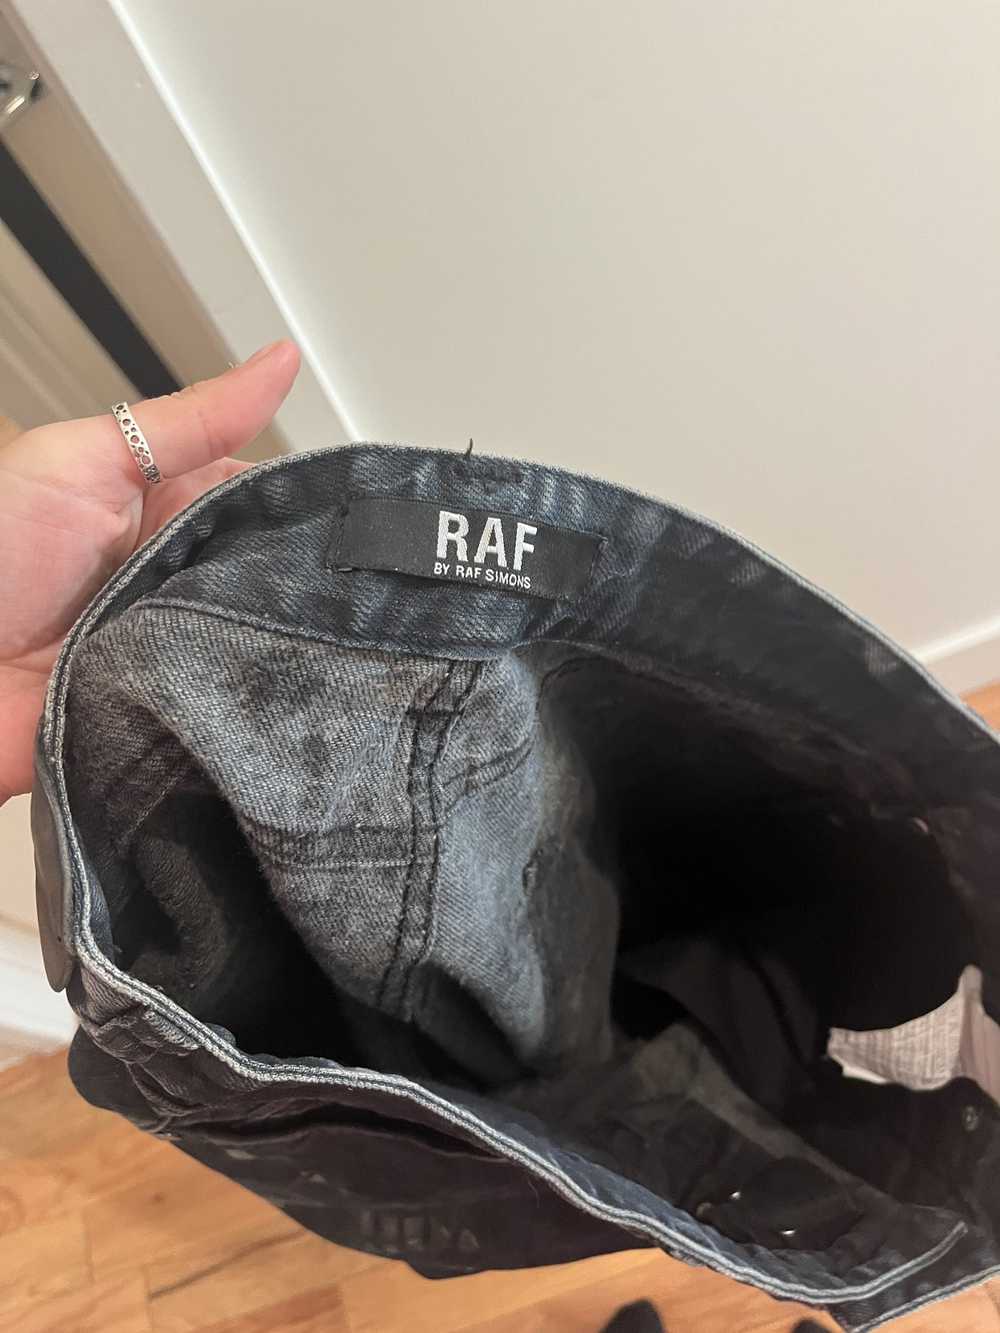 Raf by Raf Simons Raf Simmons shoe print pants - image 5